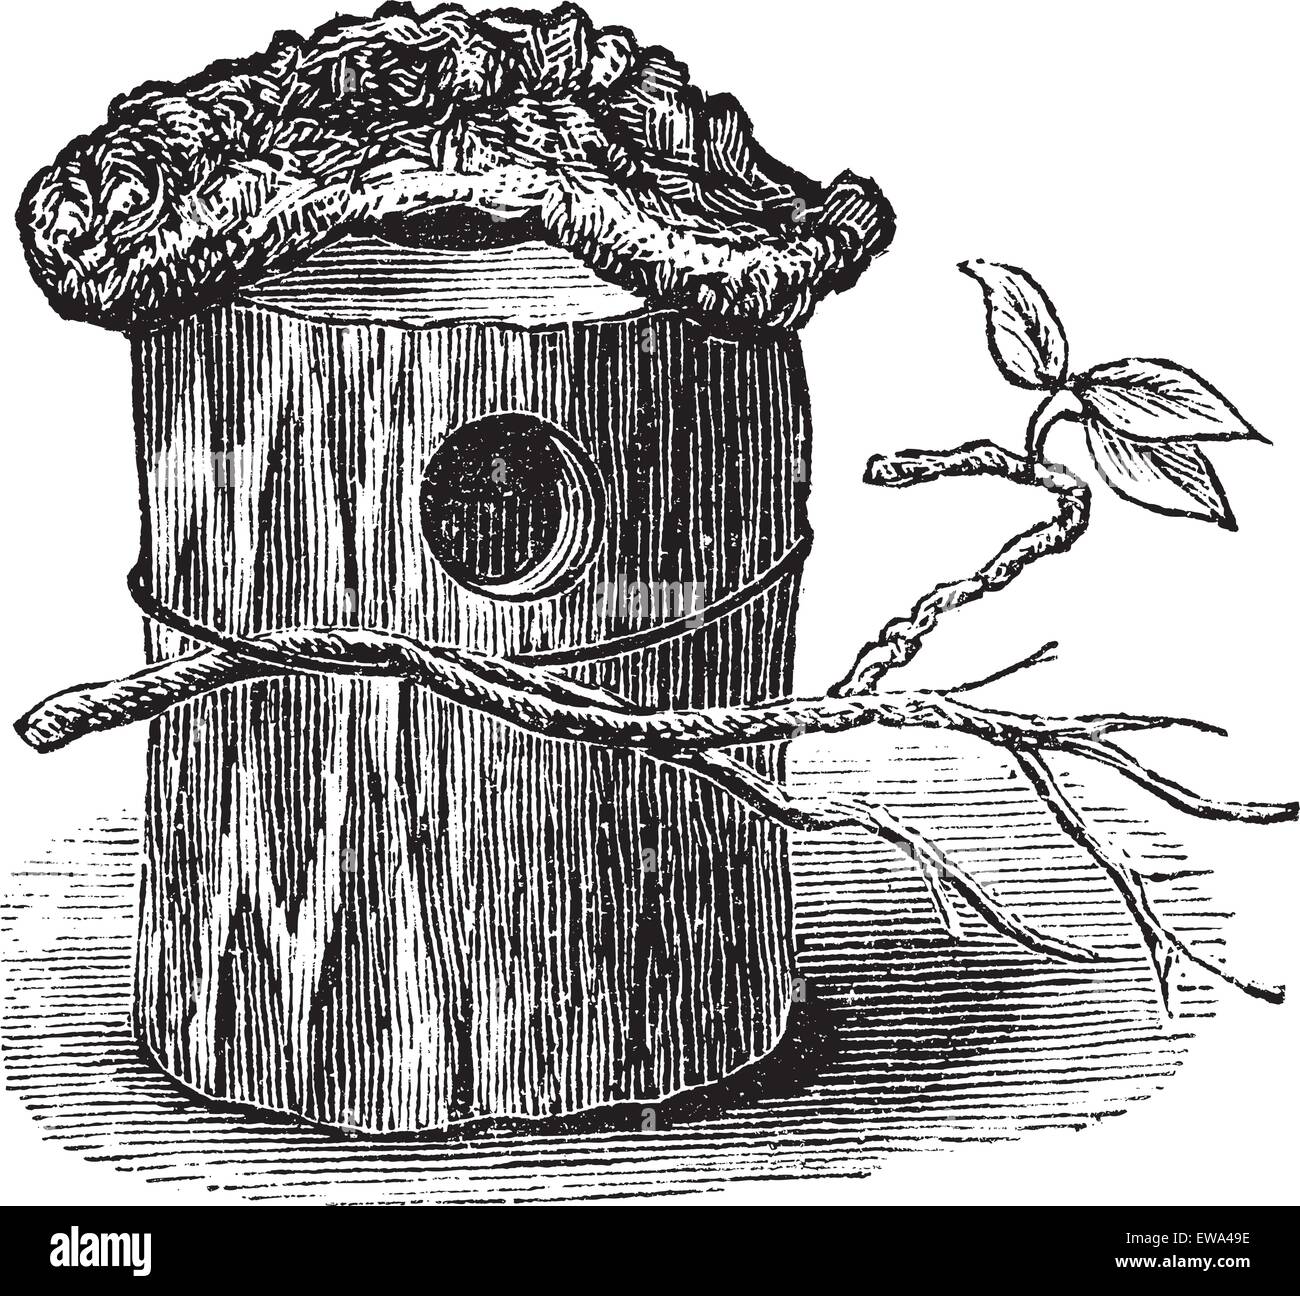 El perico nido hechas de tronco de árbol hueco, vintage ilustración grabada. Trousset encyclopedia (1886 - 1891). Ilustración del Vector